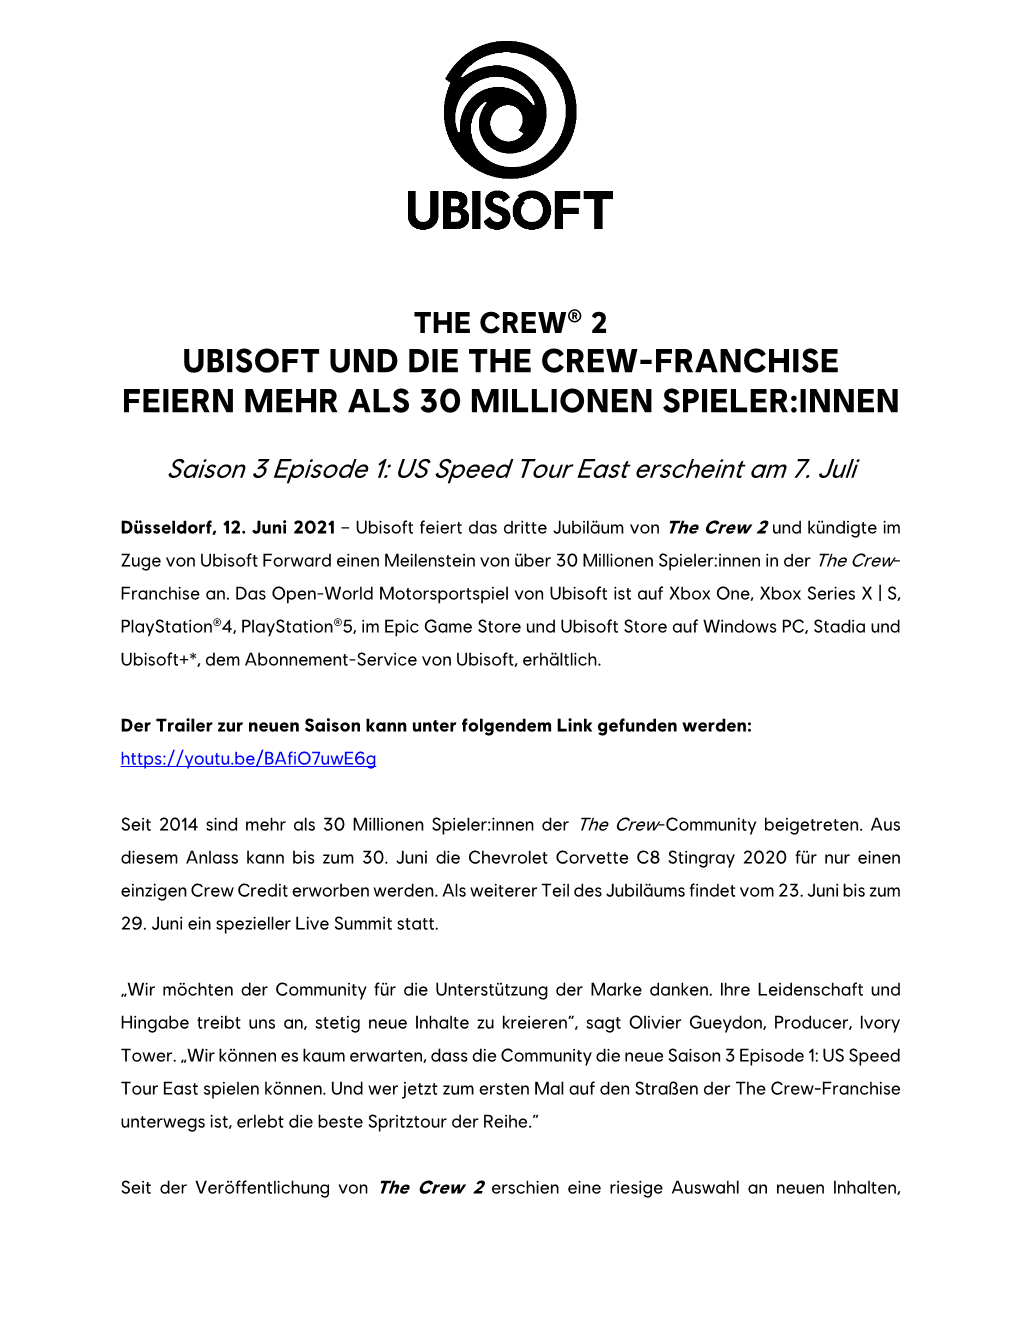 Ubisoft Und Die the Crew-Franchise Feiern Mehr Als 30 Millionen Spieler:Innen